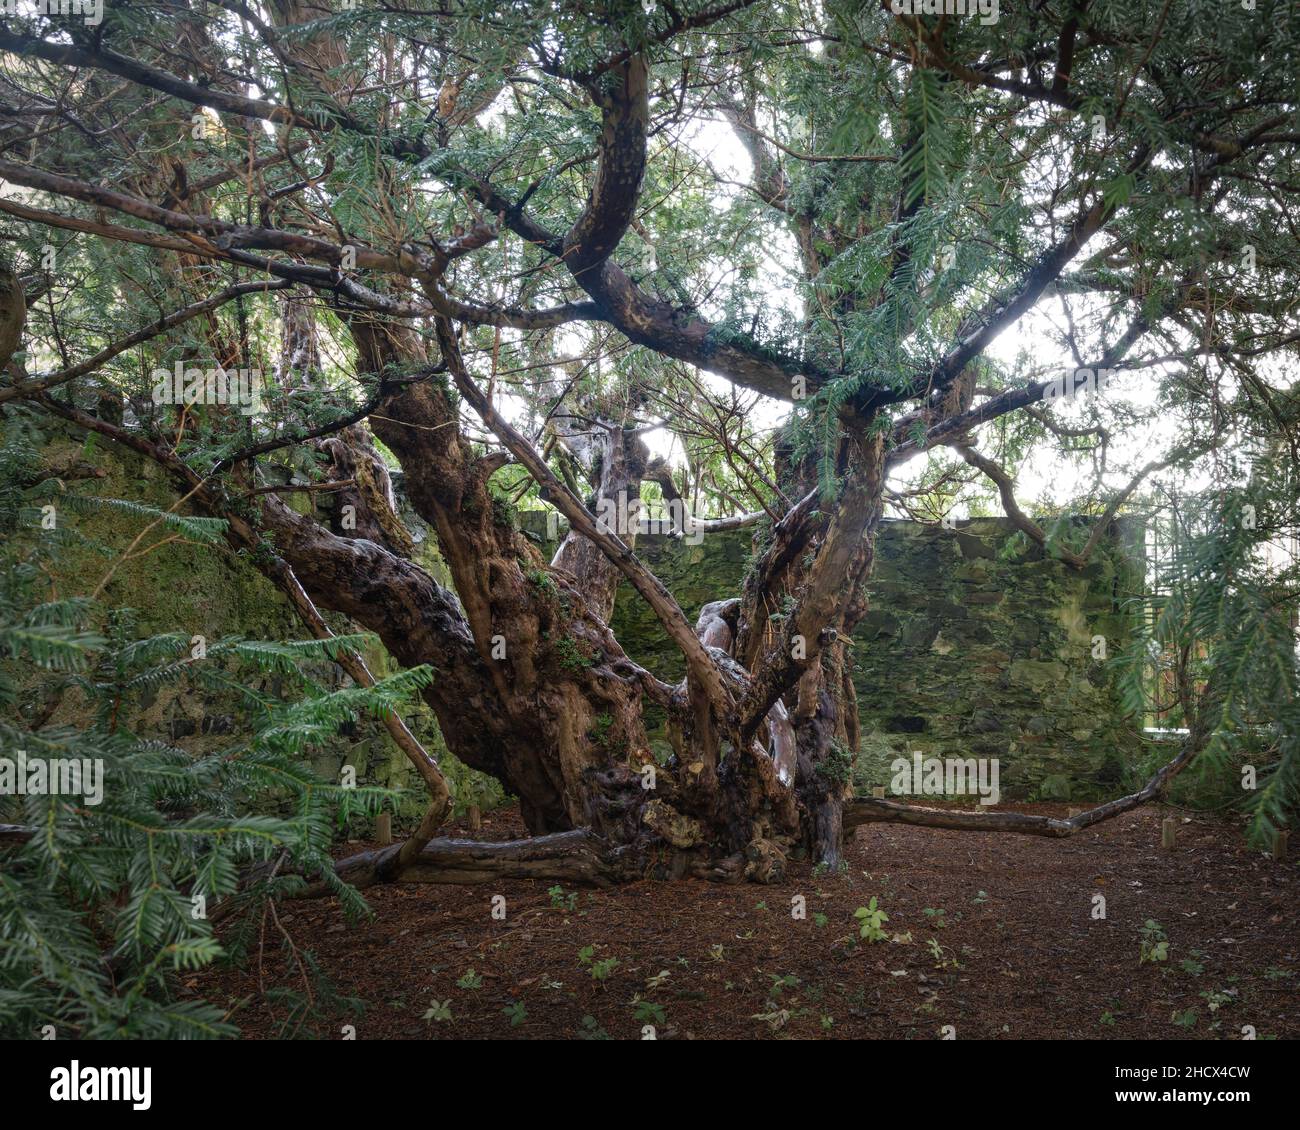 Die Fortingall-Eibe, der wahrscheinlich älteste Baum in Großbritannien, ist schätzungsweise 2000 bis 3000 Jahre alt. Dieses Exemplar der Europäischen Eibe (Taxus baccata) ist lokat Stockfoto